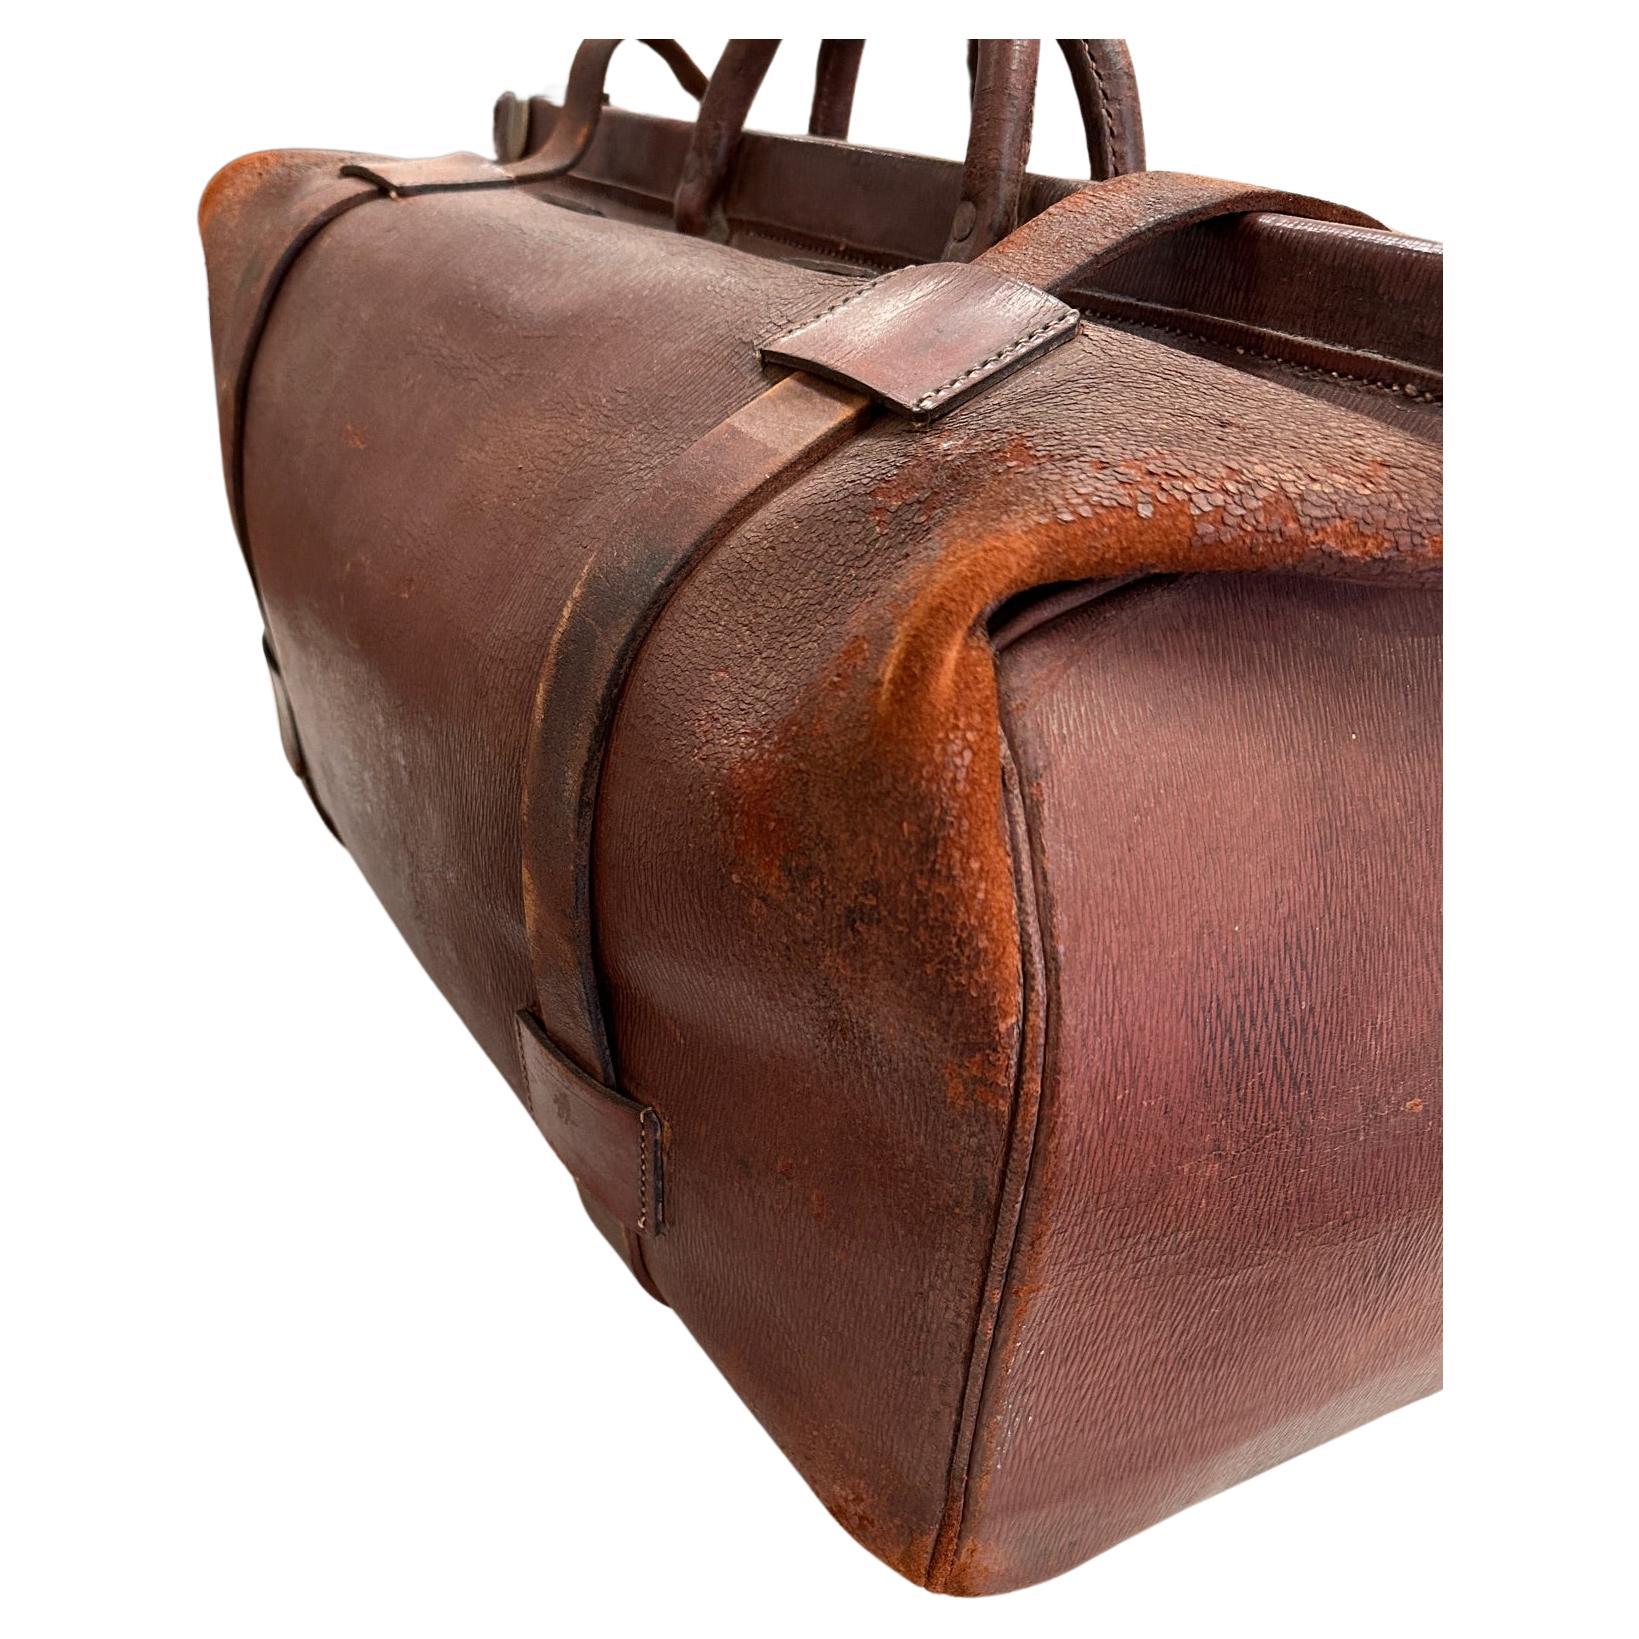 Ce magnifique sac de voyage ou bagage en cuir ancien du 19e siècle est une pièce unique.  Le sac s'ouvre et toute la quincaillerie en laiton est en état de marche. Le sac a la forme d'une trousse de médecin, mais il est beaucoup plus grand, comme un